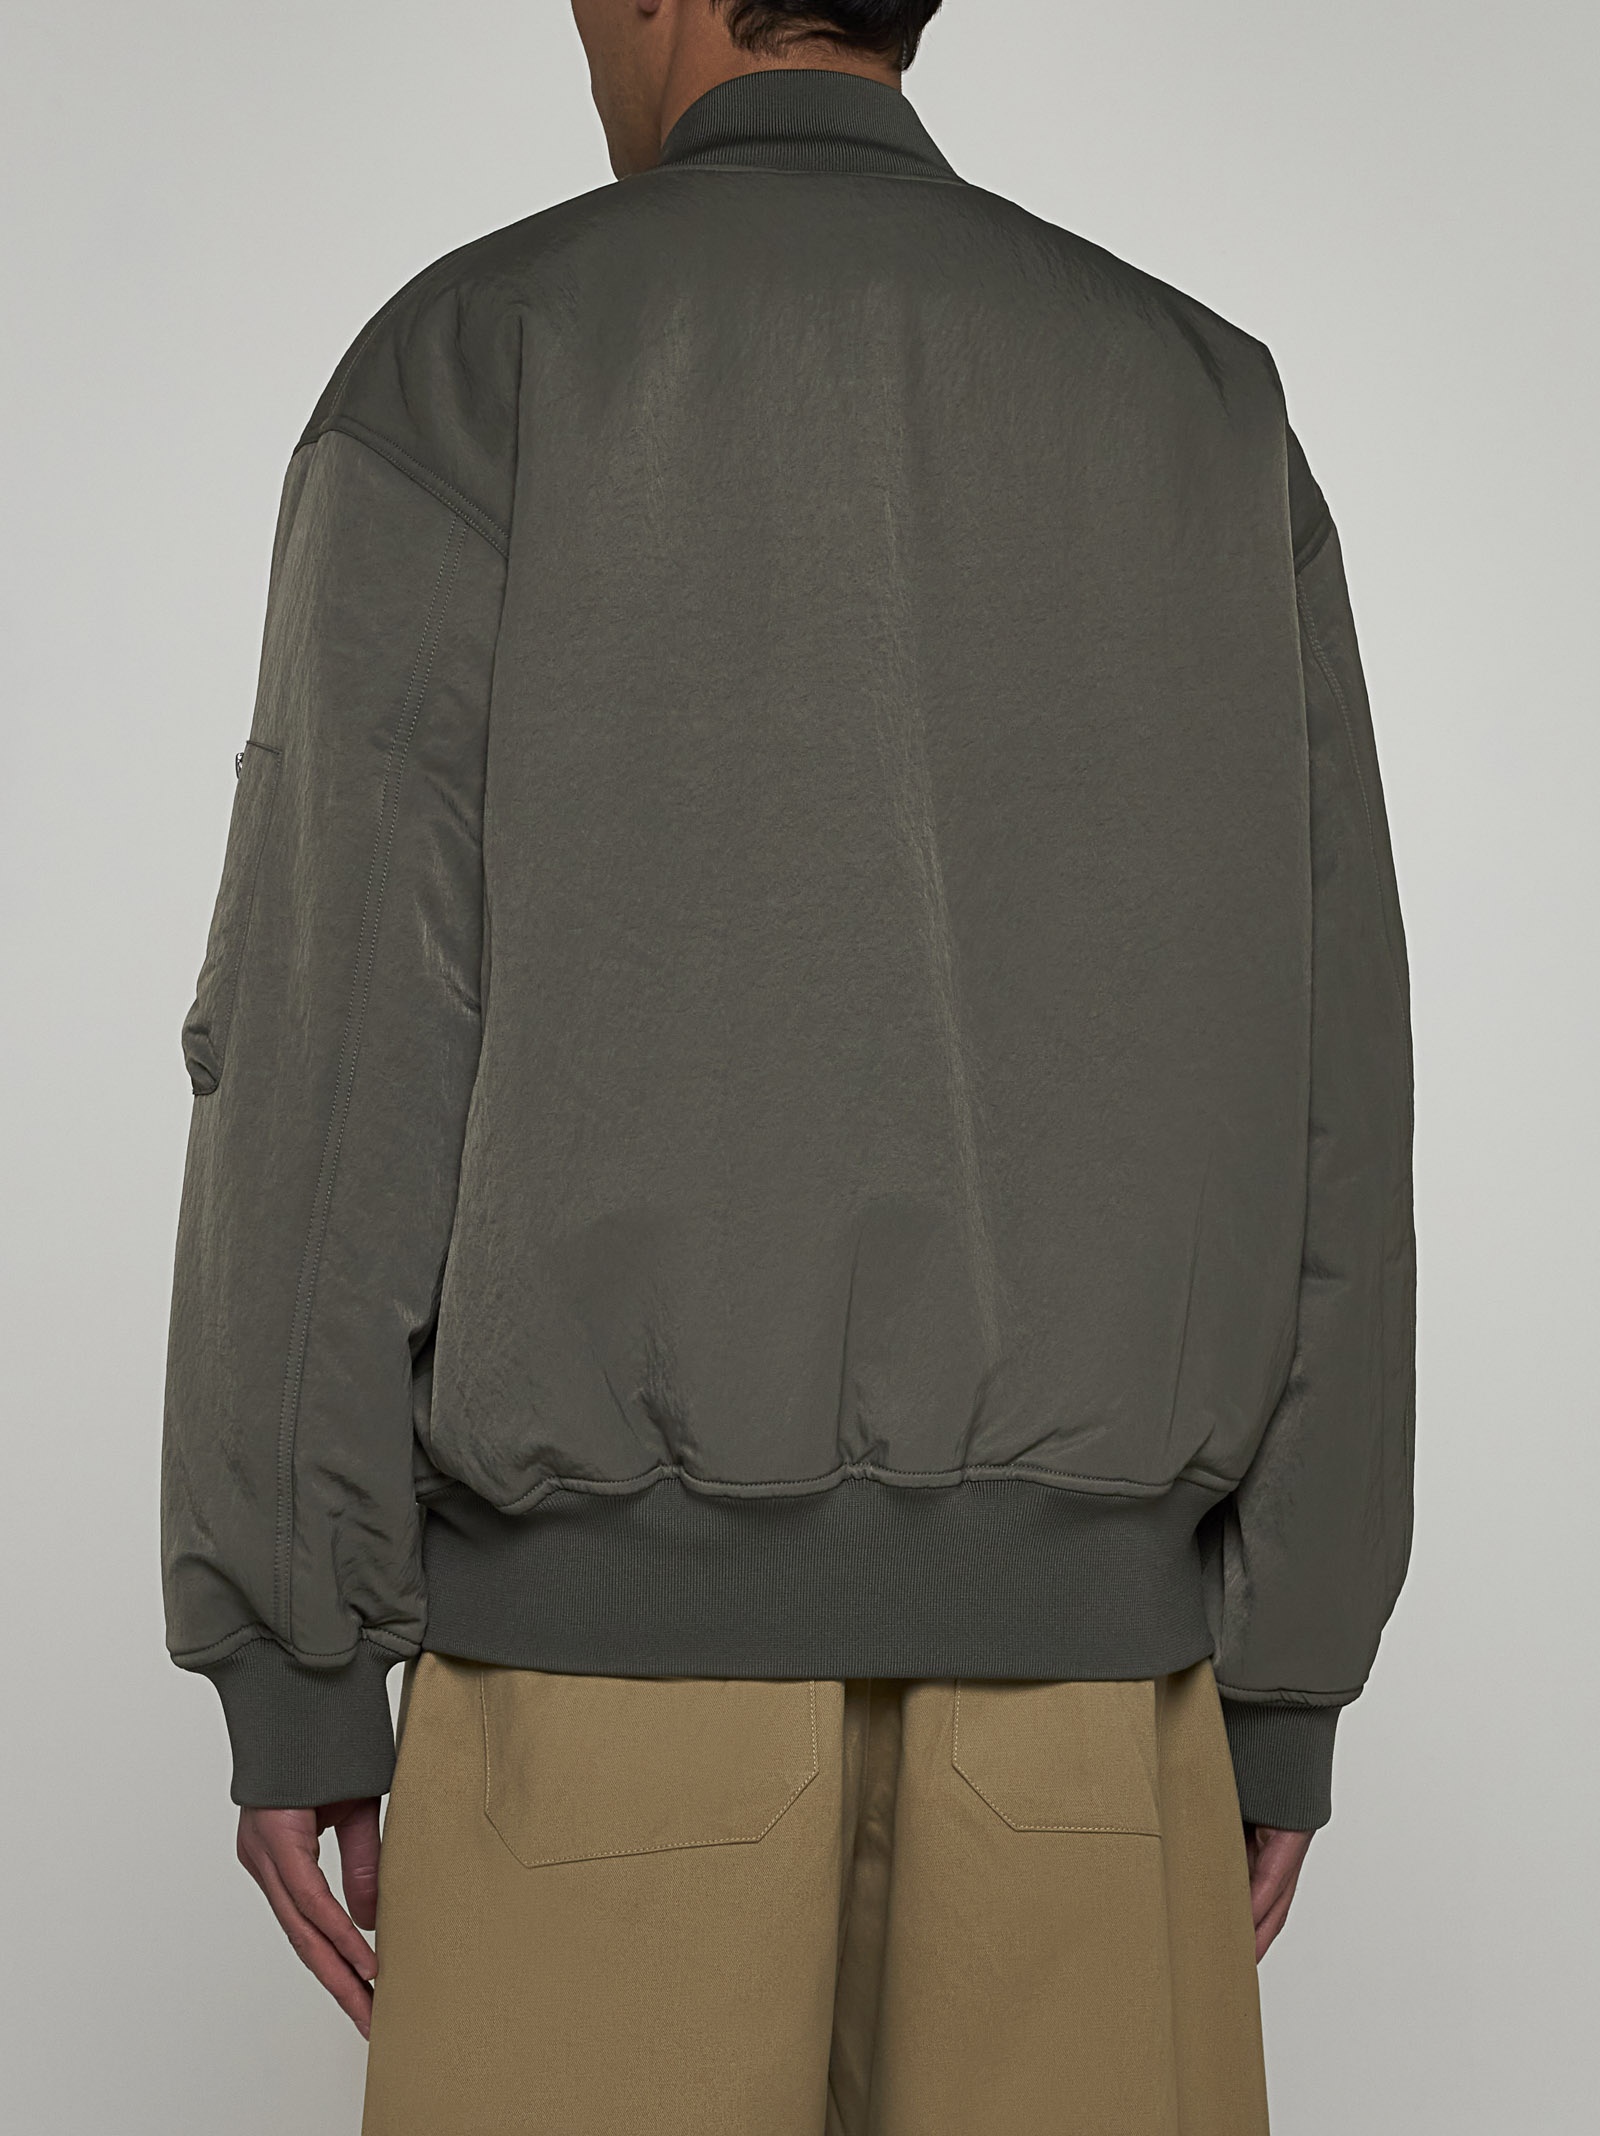 Leroy nylon bomber jacket - 5